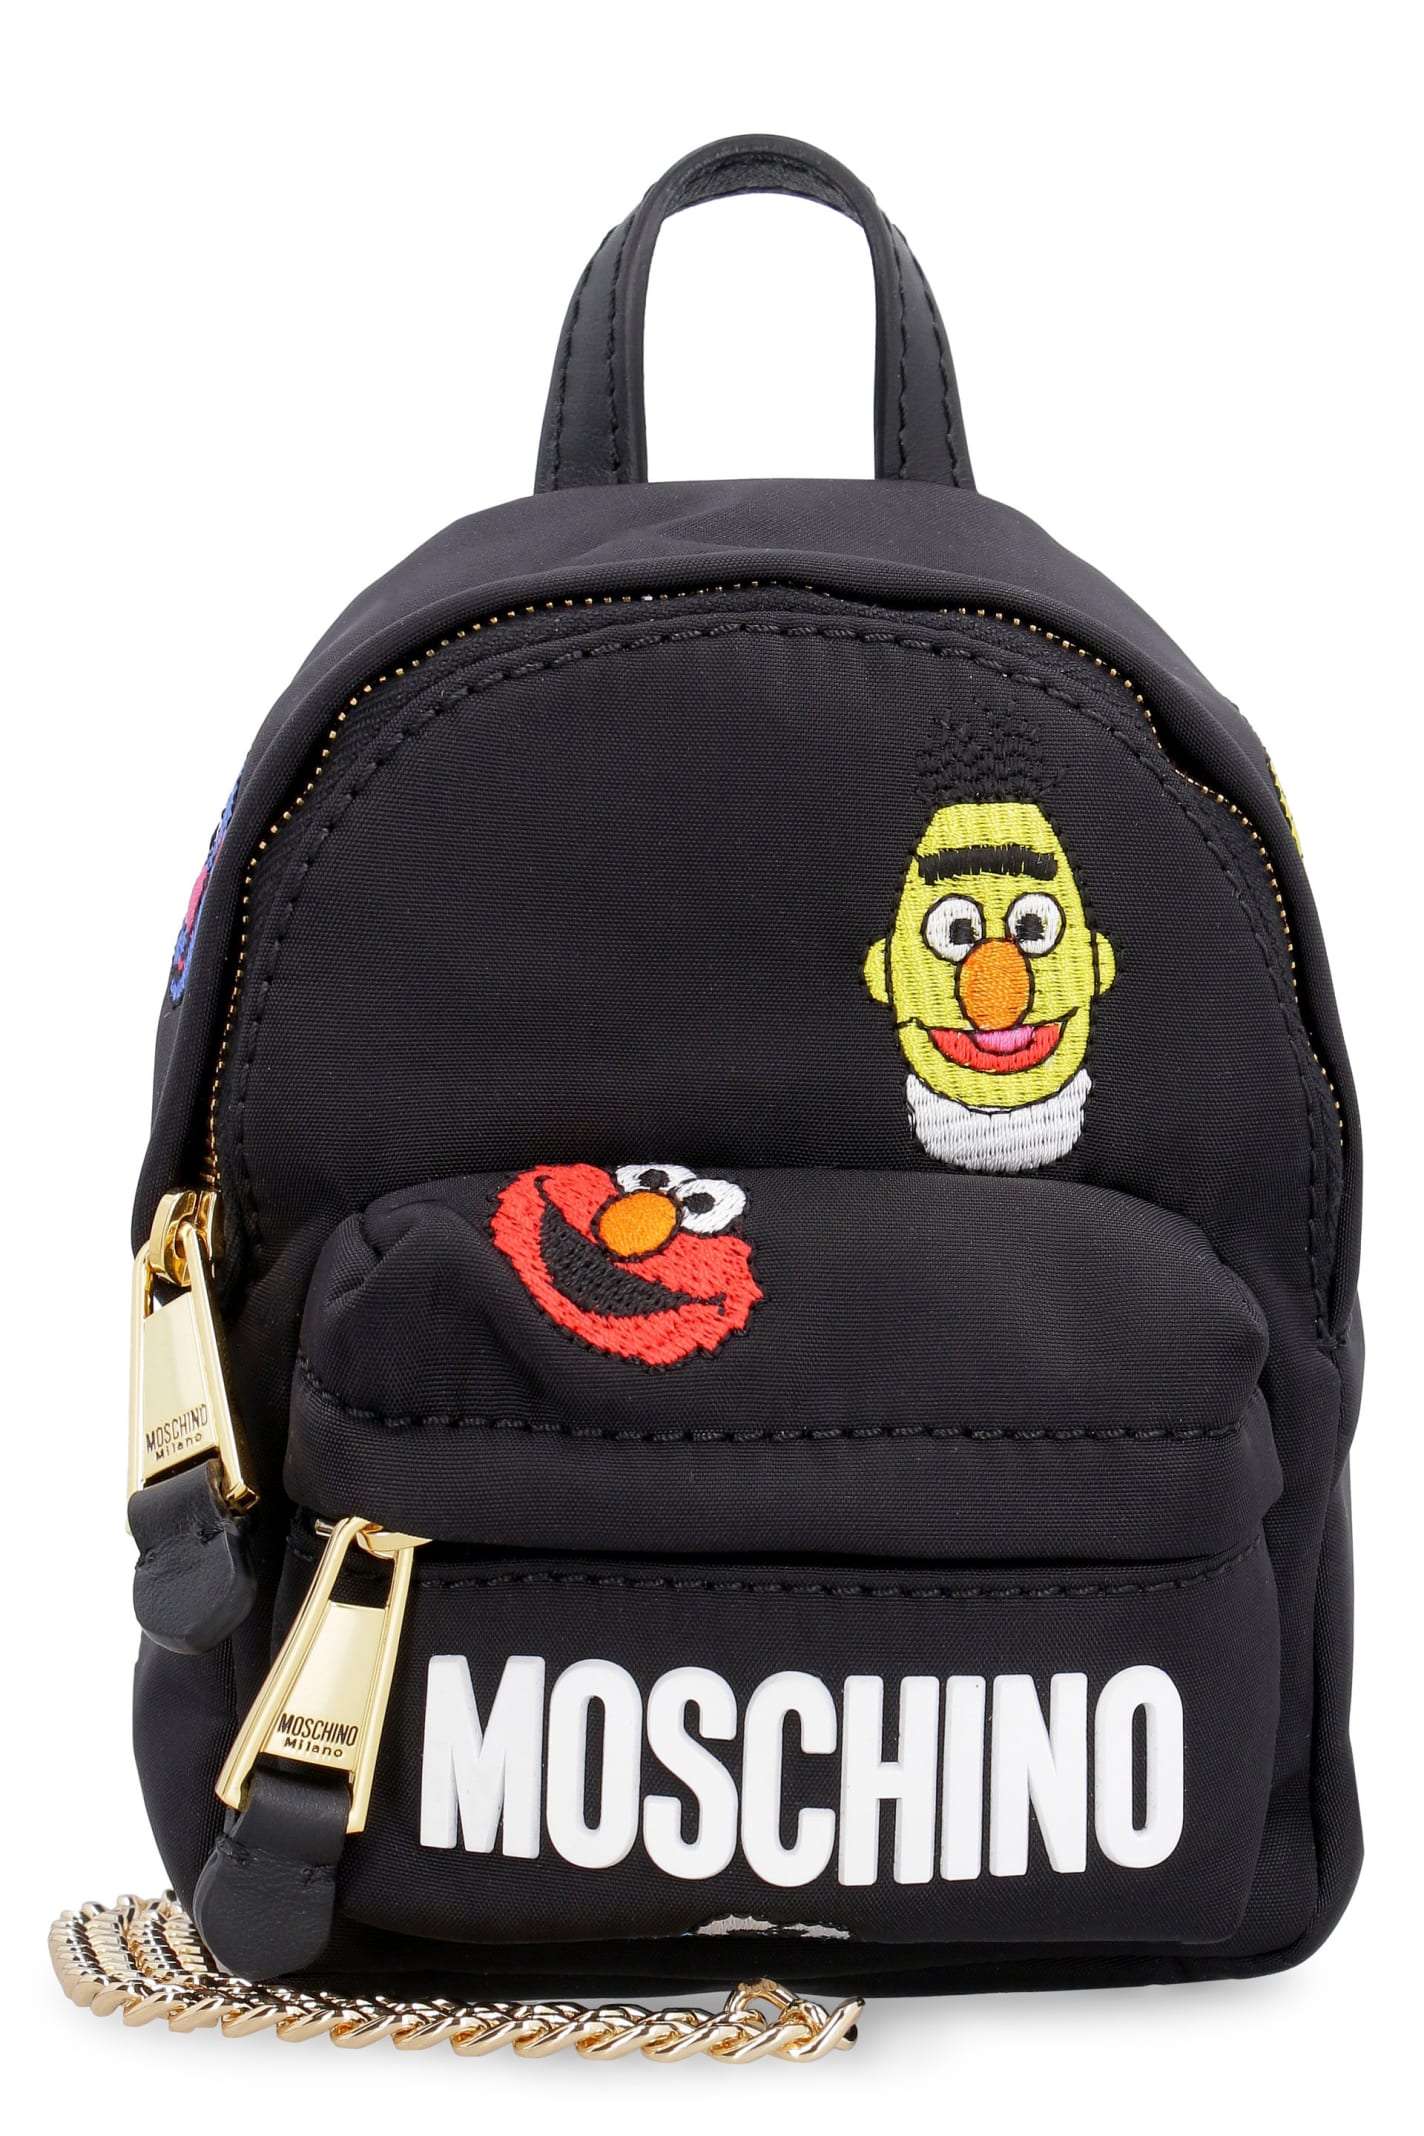 Moschino Nylon Micro Backpack - Moschino Sesame Street©